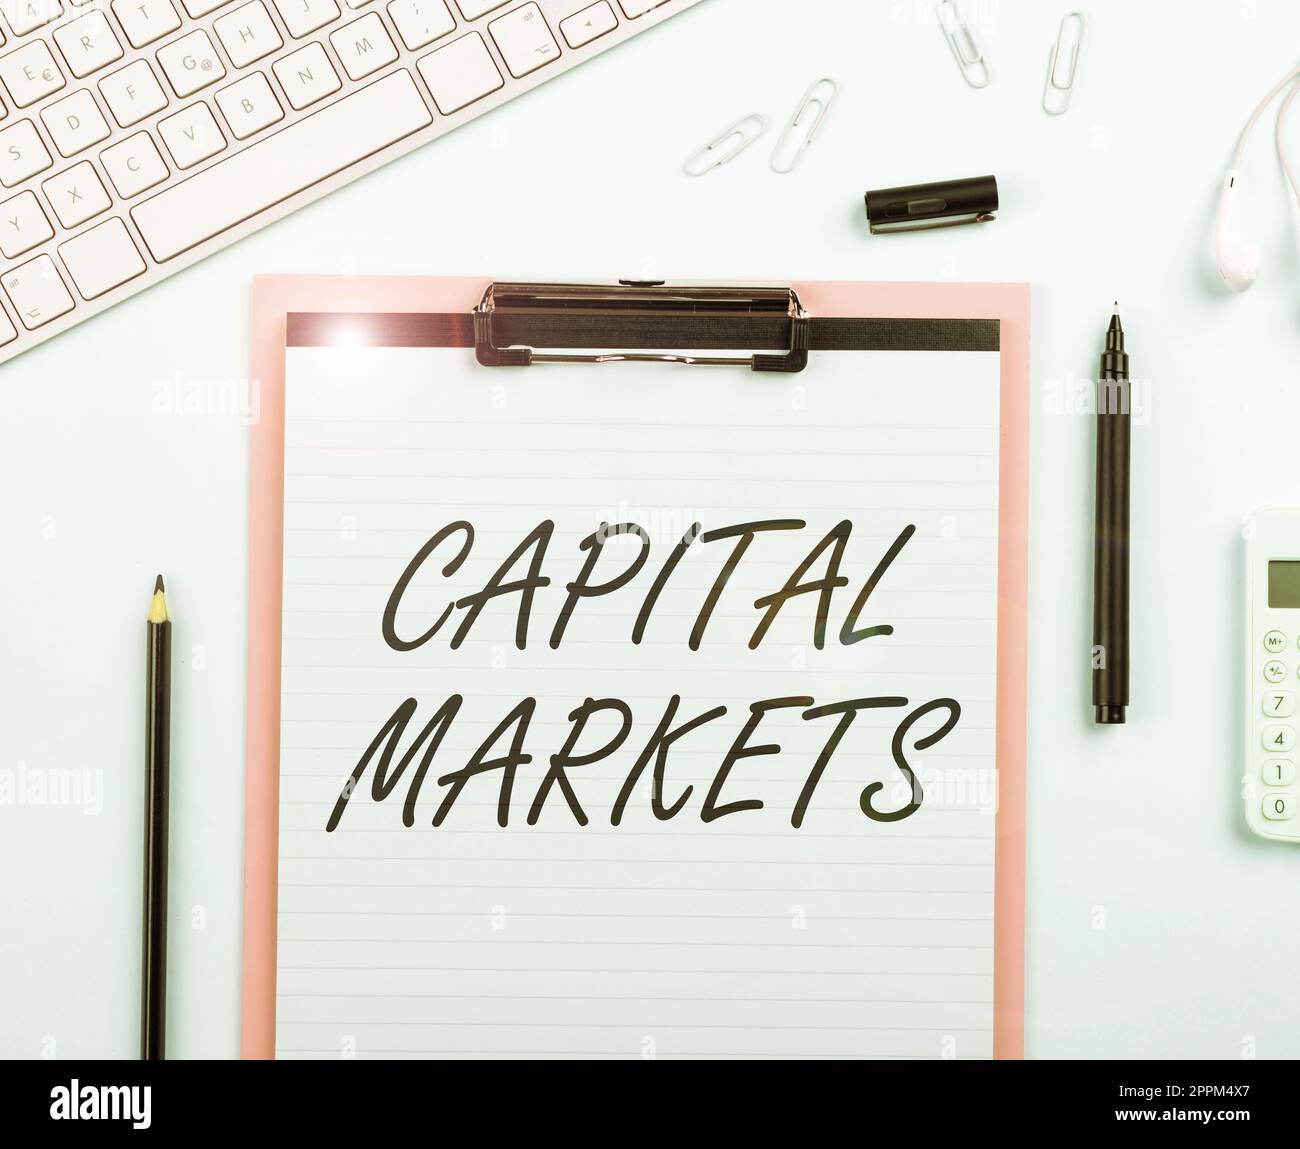 Textüberschrift zur Darstellung von Kapitalmärkten. Mit der Geschäftsausstellung können Unternehmen Mittel beschaffen, indem sie Marktsicherheit bieten Stockfoto